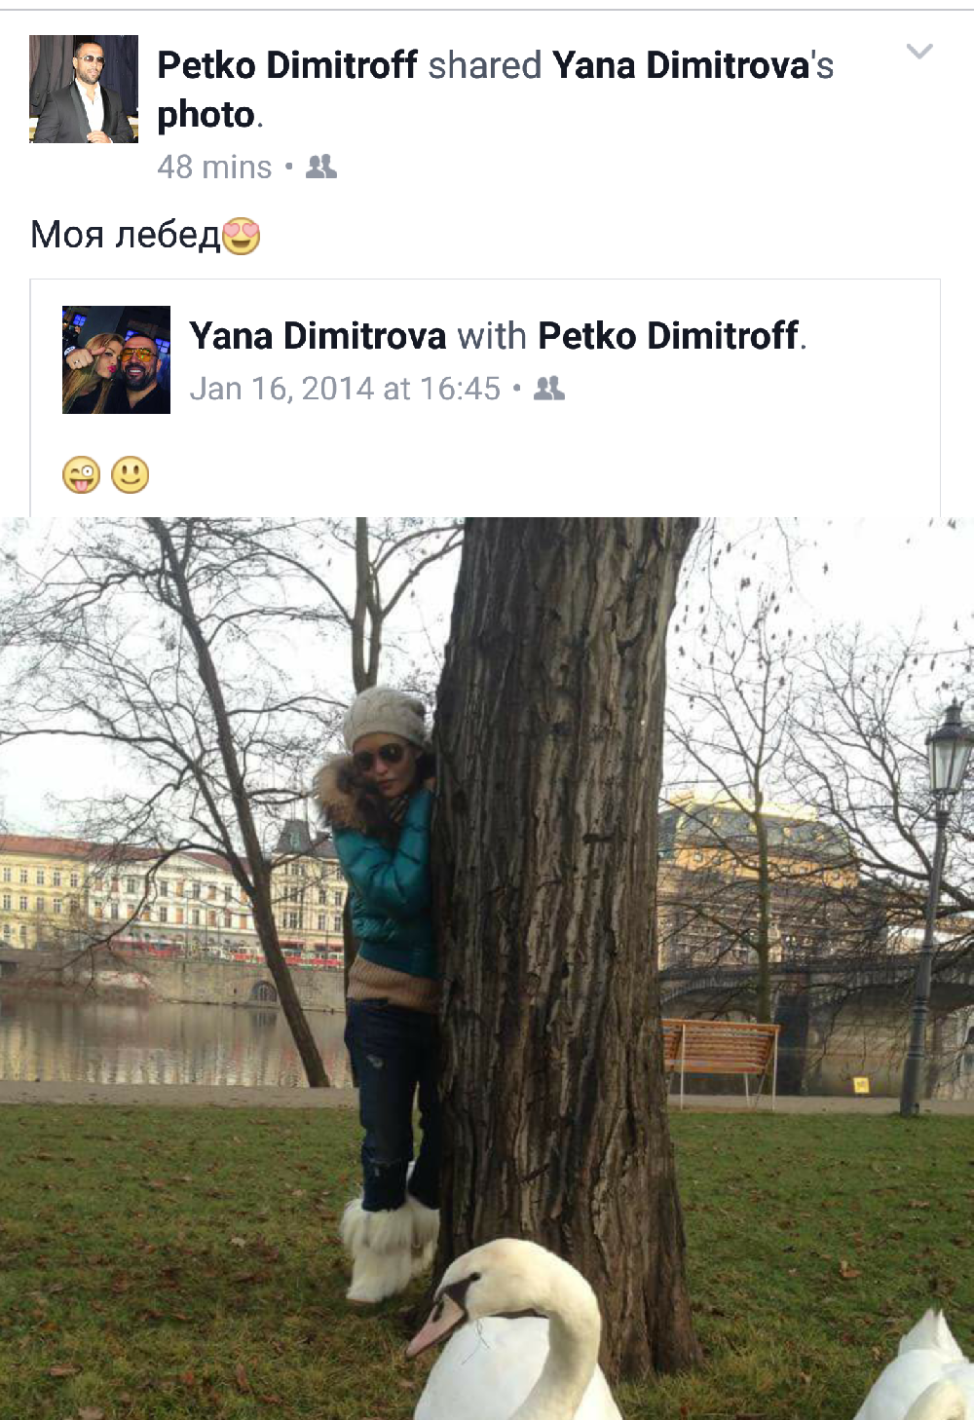 Сълзите на Яна разтърсиха всички: Петко Димитров направи неочакваното след 3 години брак! (още подробности)